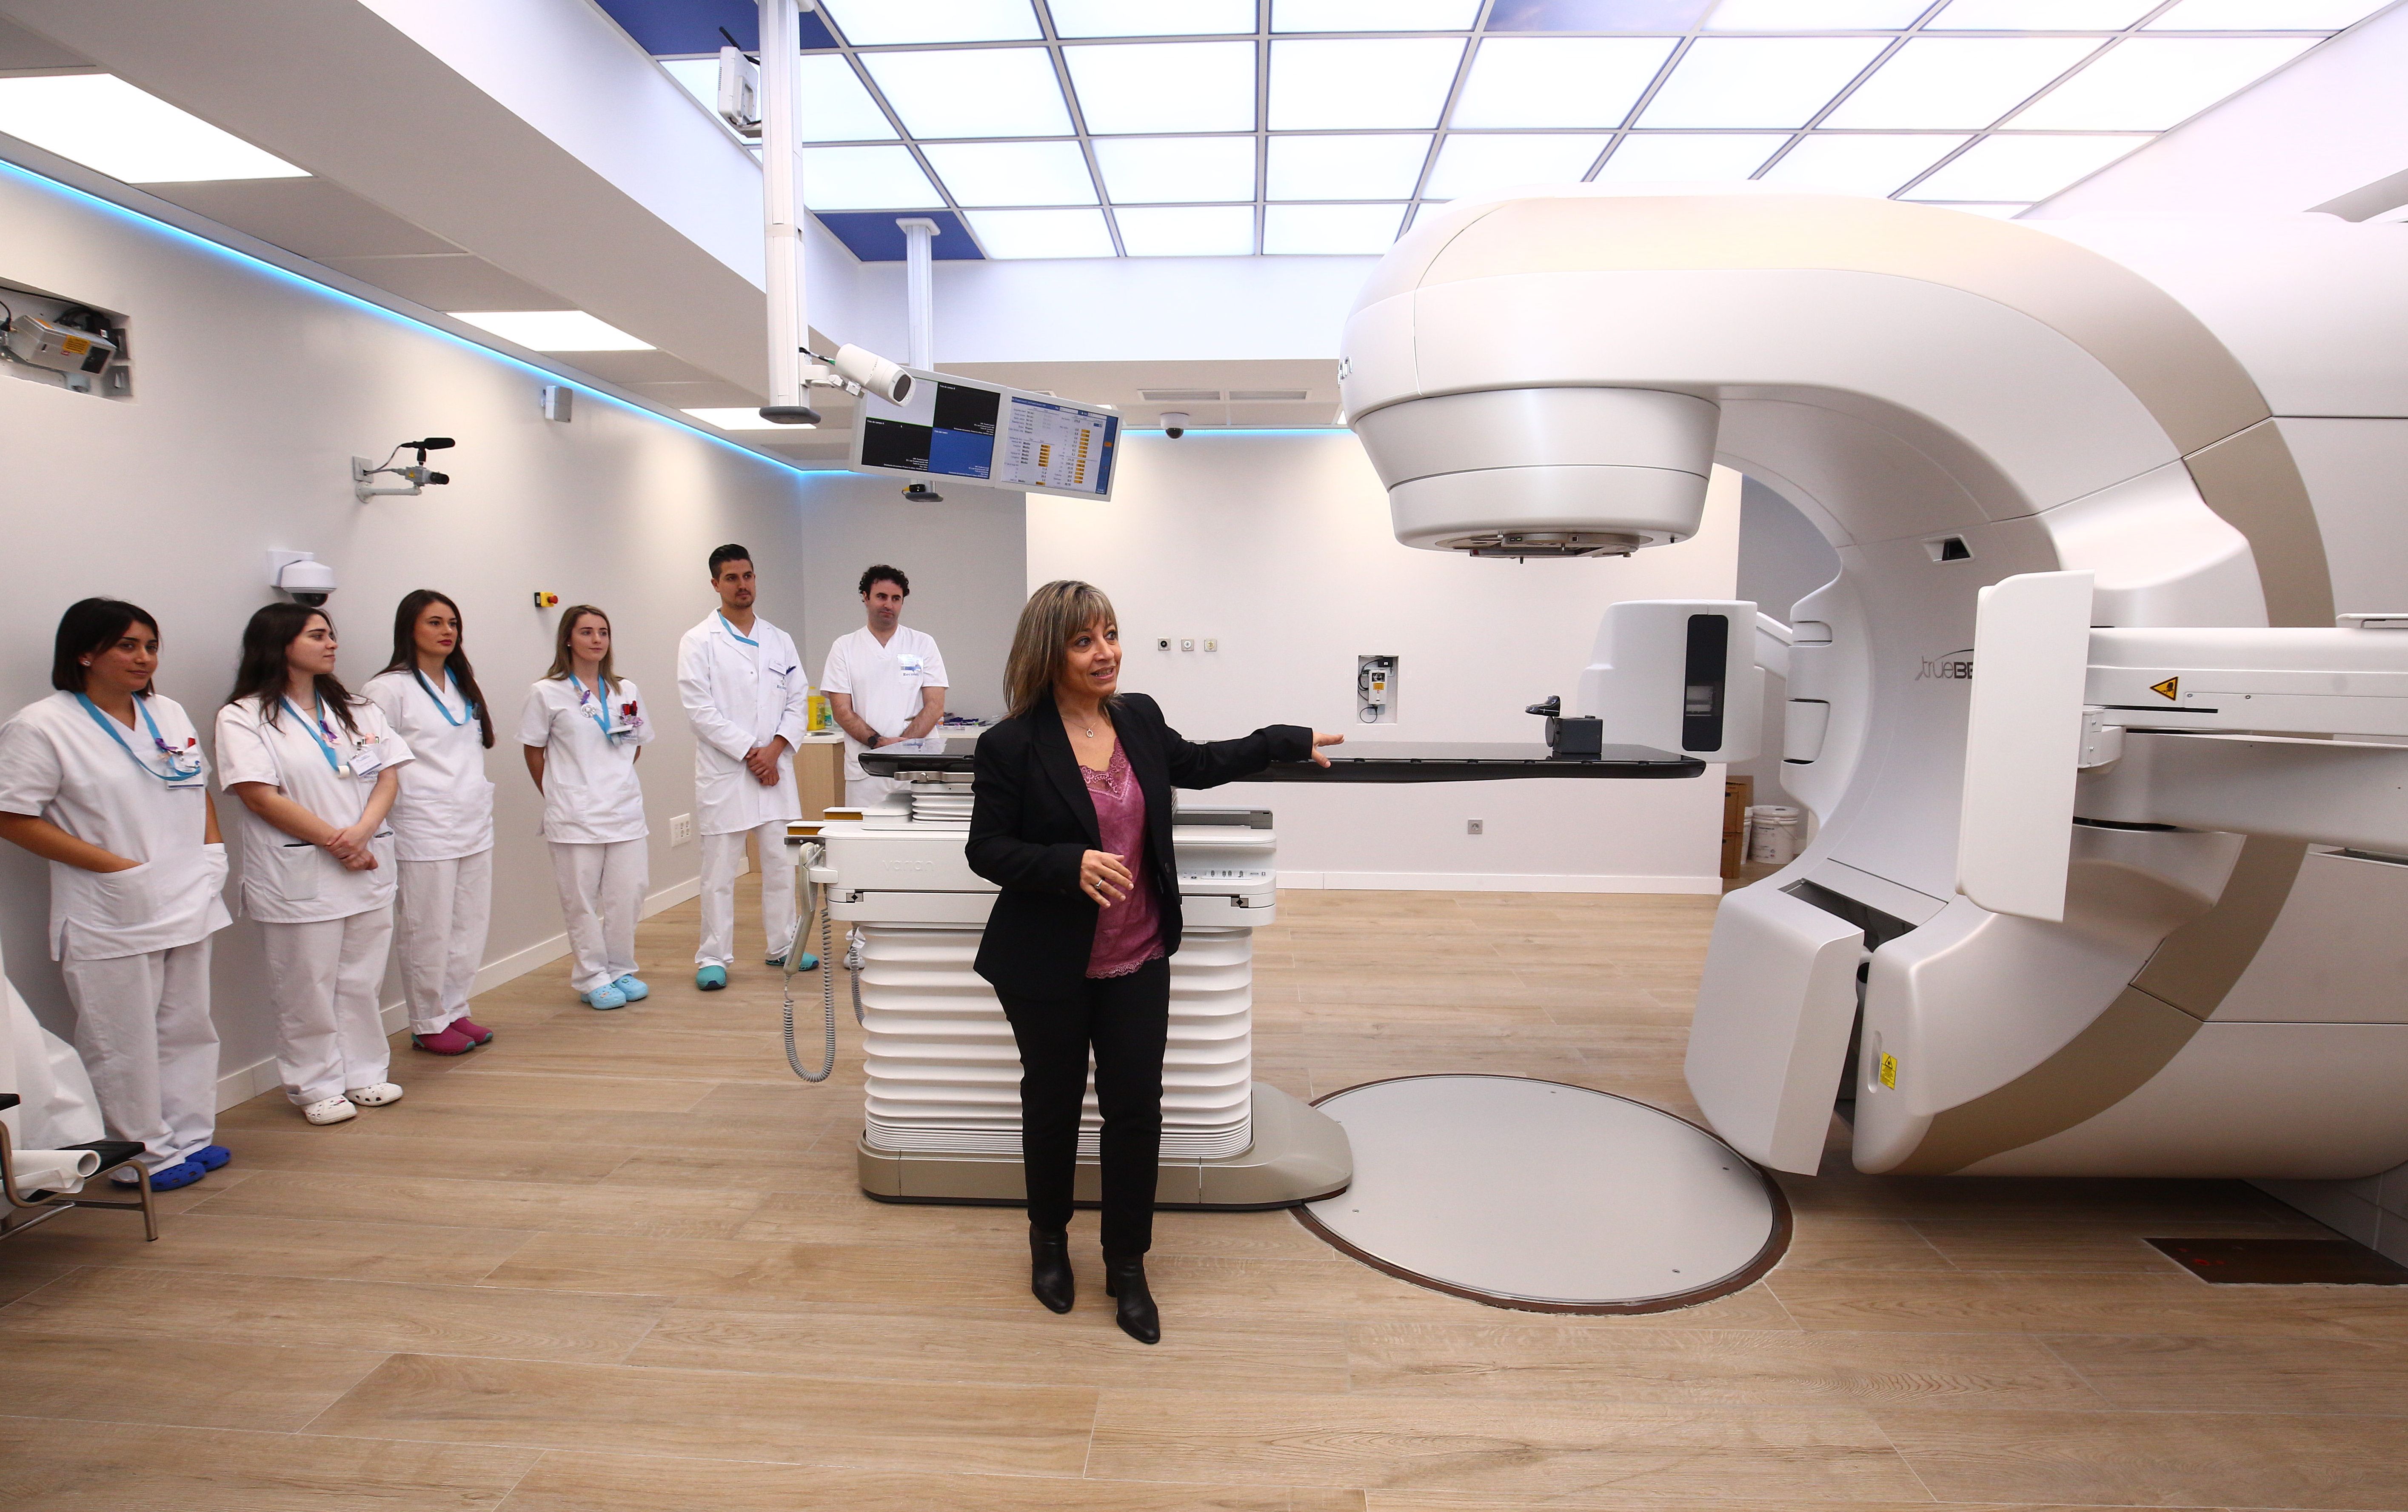 Presentación de la Unidad de Radioterapia de Clínica Ponferrada. | César Sánchez (Ical)